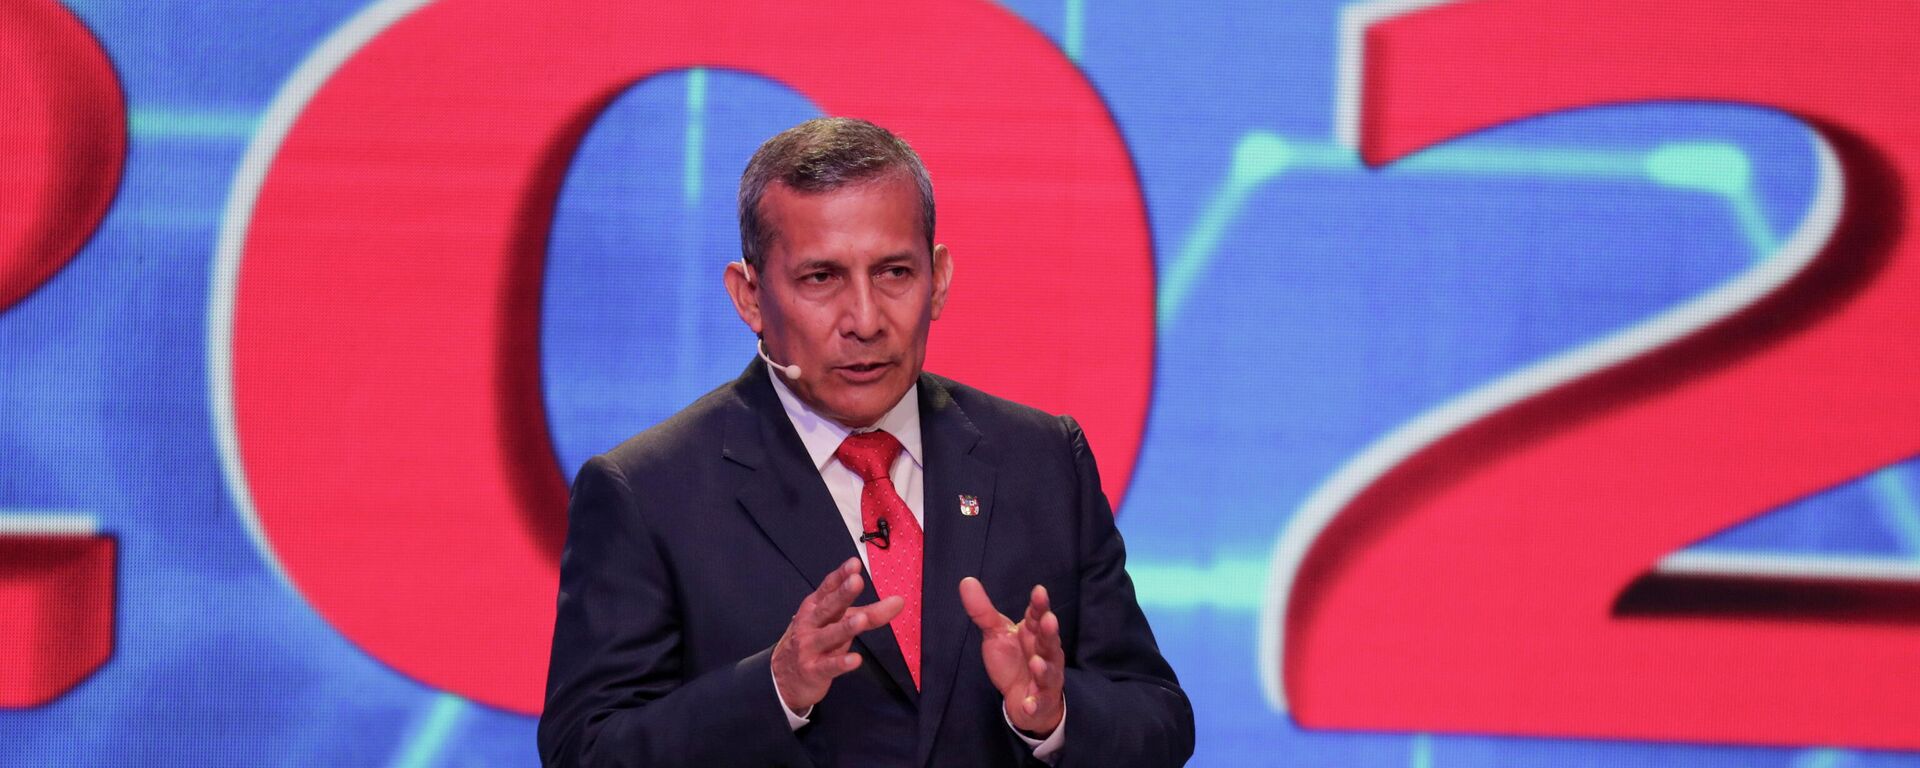 Ollanta Humala, exmandatario y candidato a presidente por el Partido Nacionalista Peruano - Sputnik Mundo, 1920, 07.04.2021